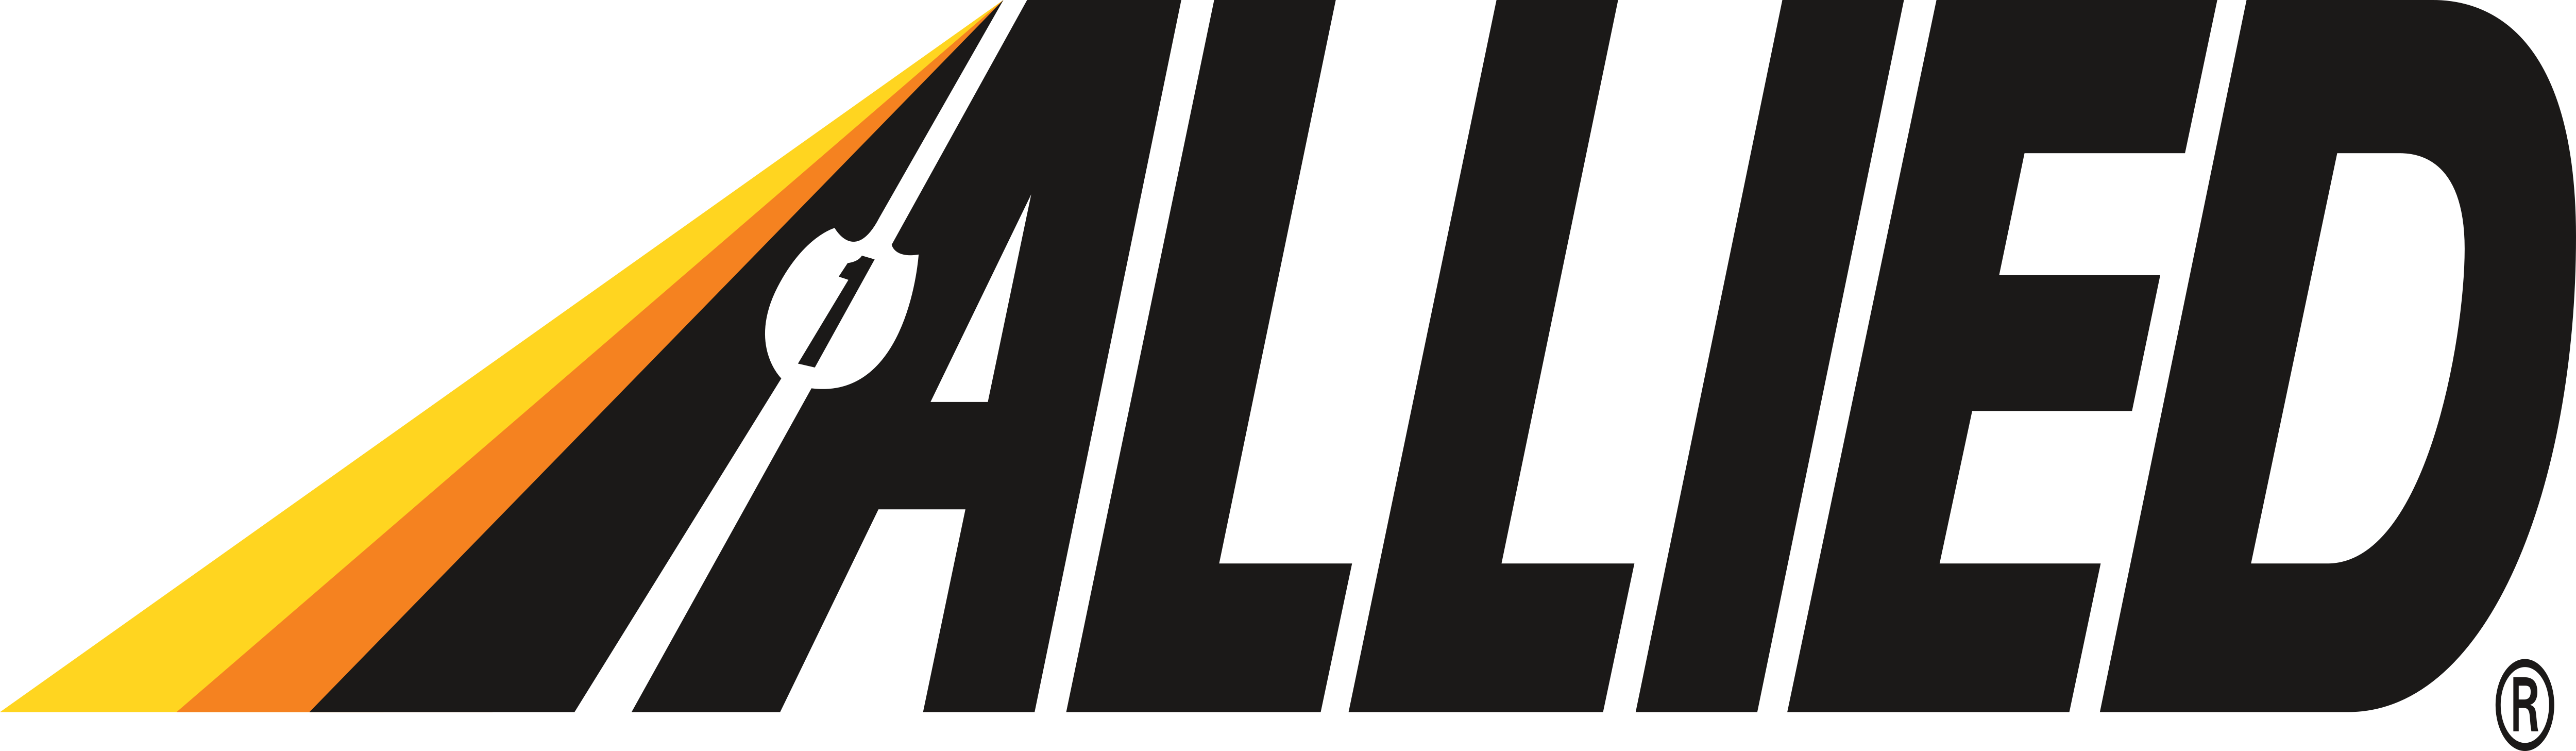 Allied Van Lines Logos Download